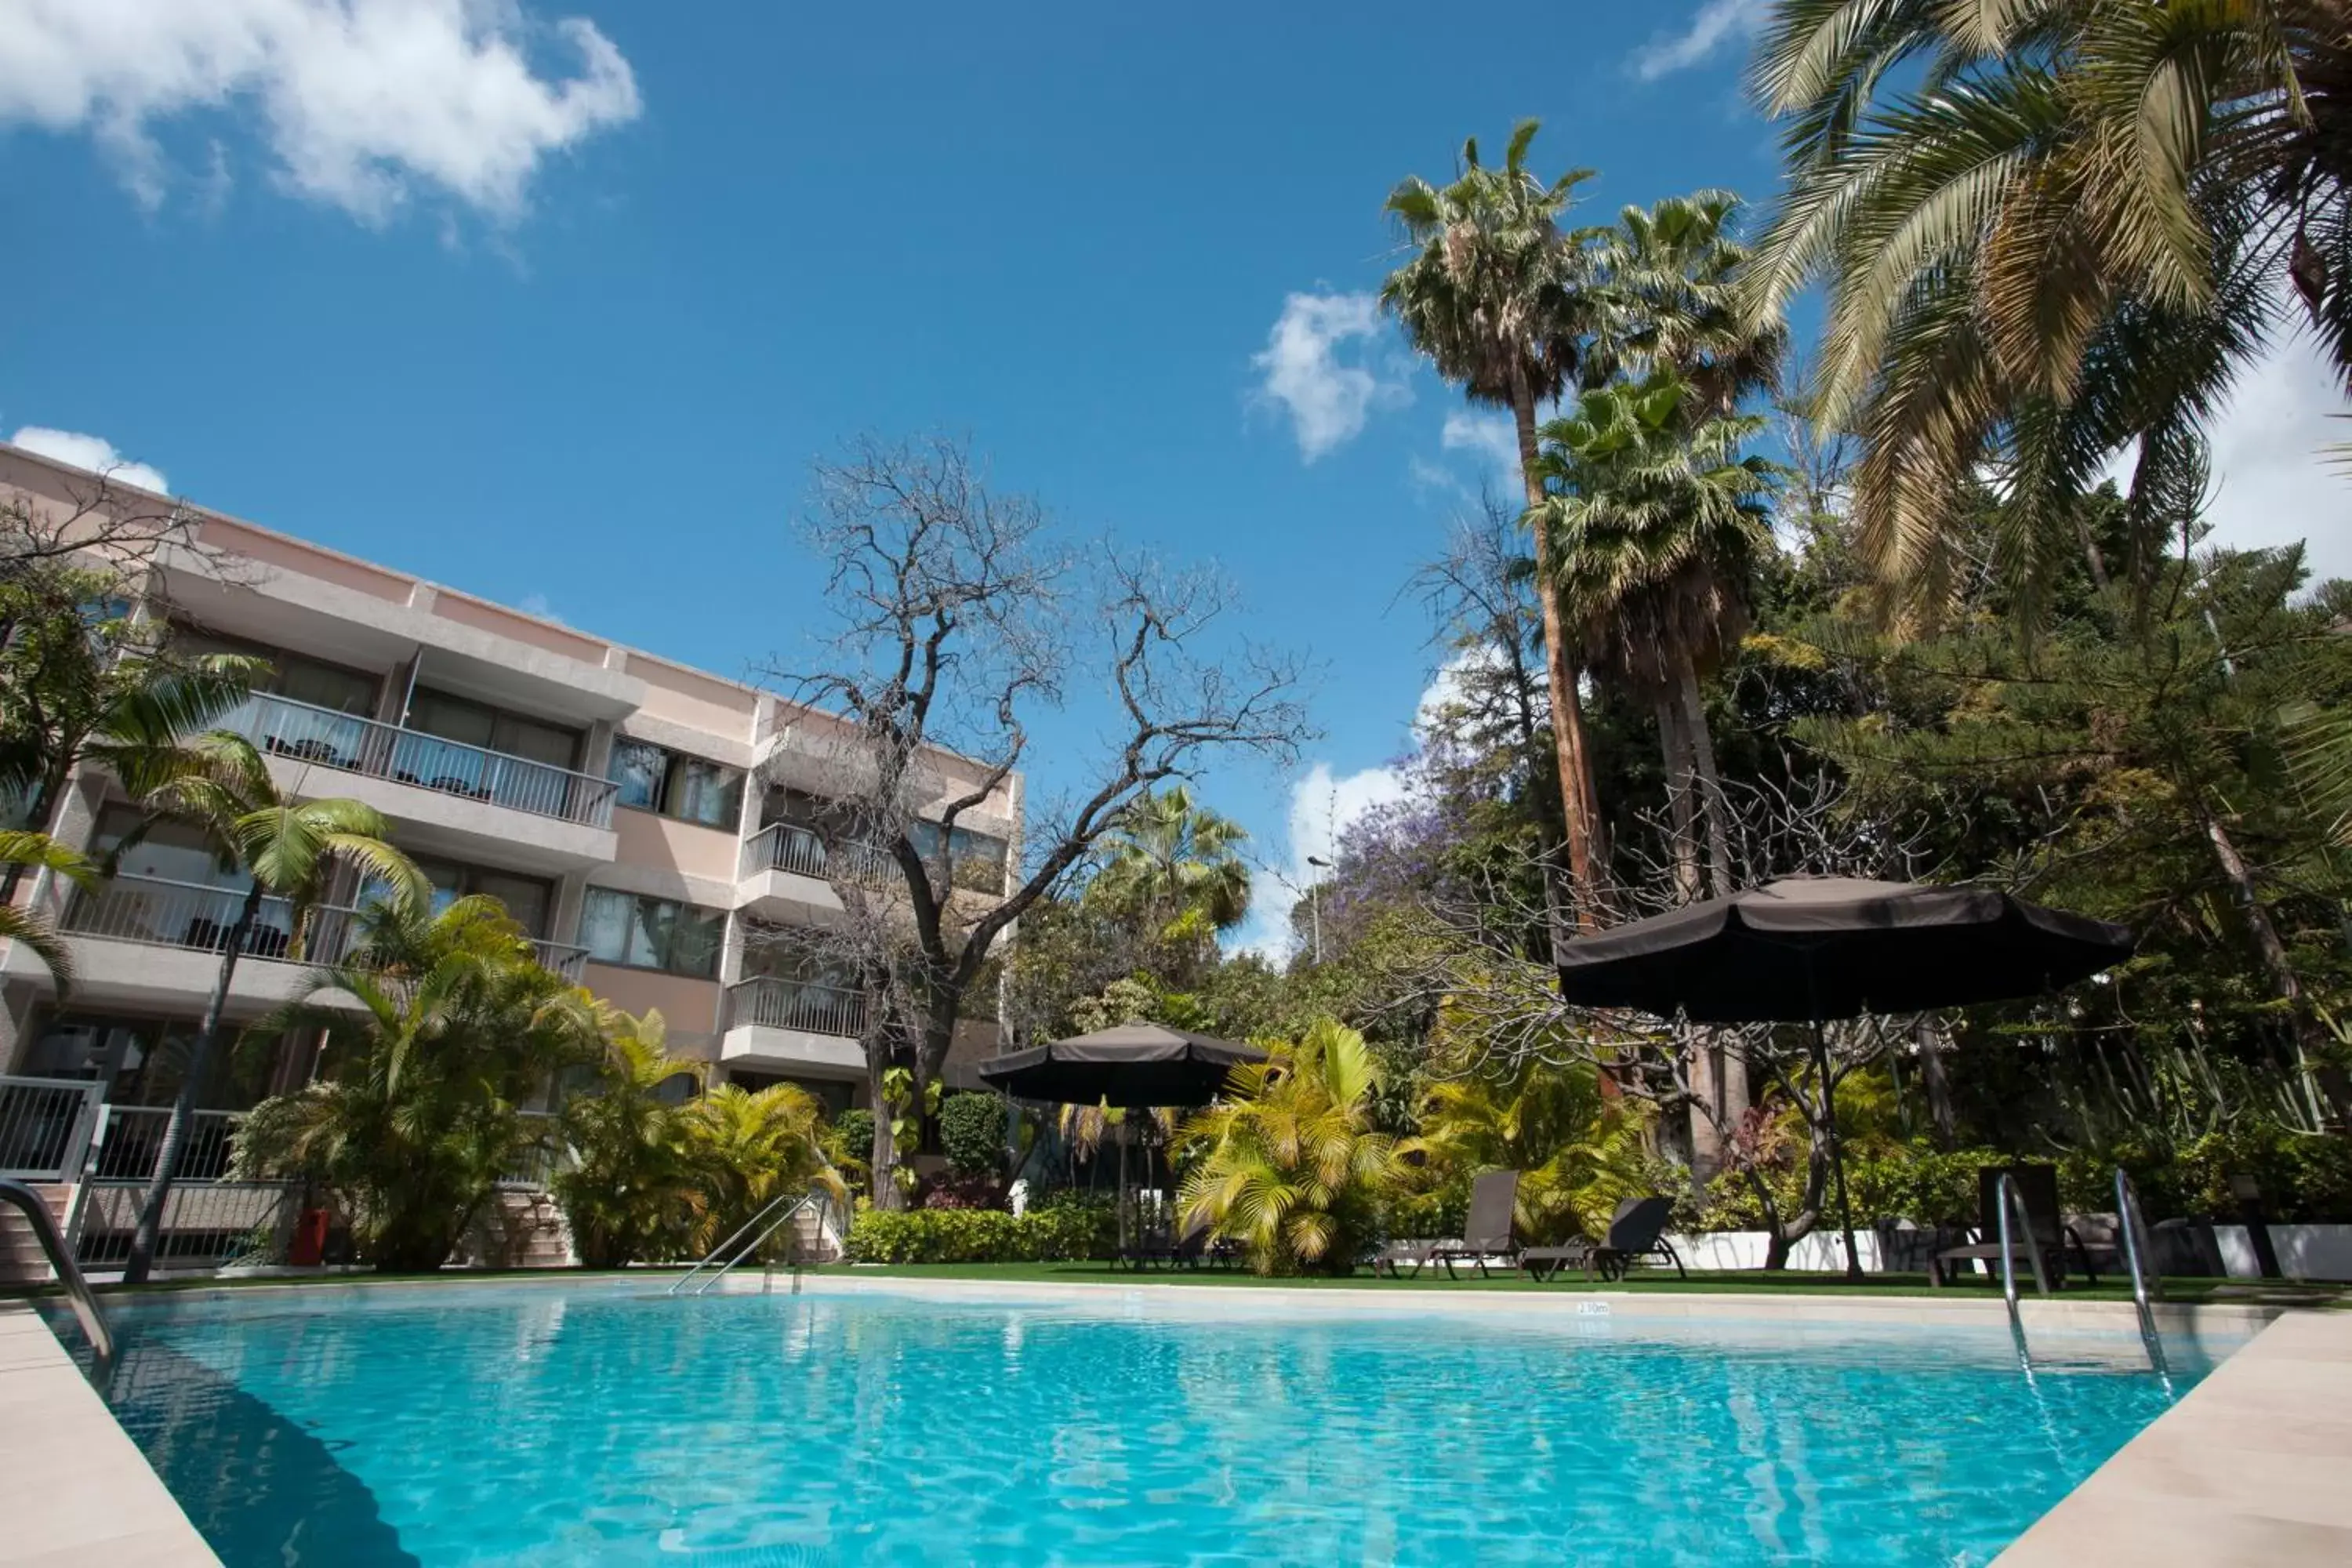 Swimming Pool in Hotel Colon Rambla